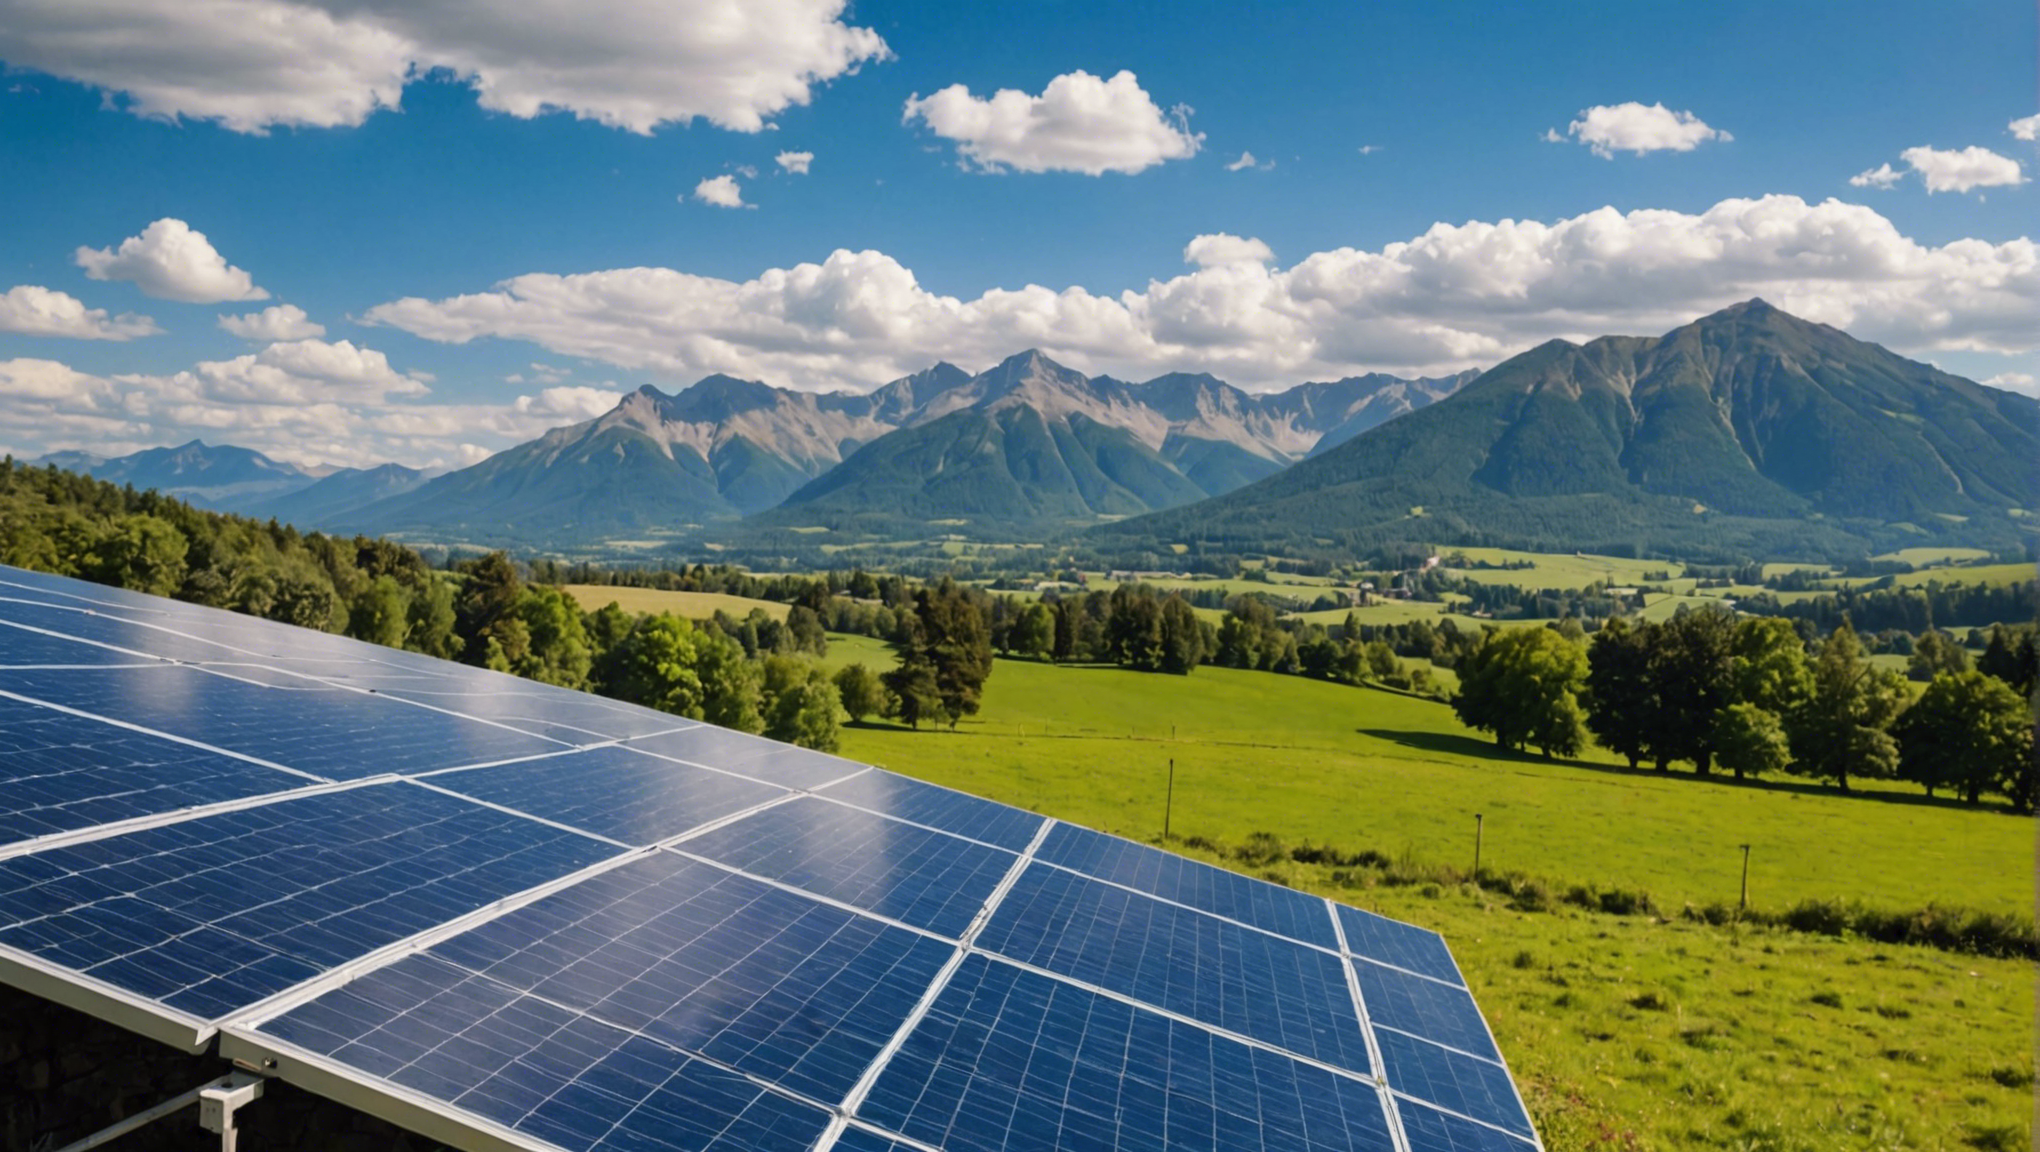 découvrez comment installer des panneaux solaires efficacement avec nos conseils pratiques et étape par étape pour une transition vers l'énergie solaire facile et durable.